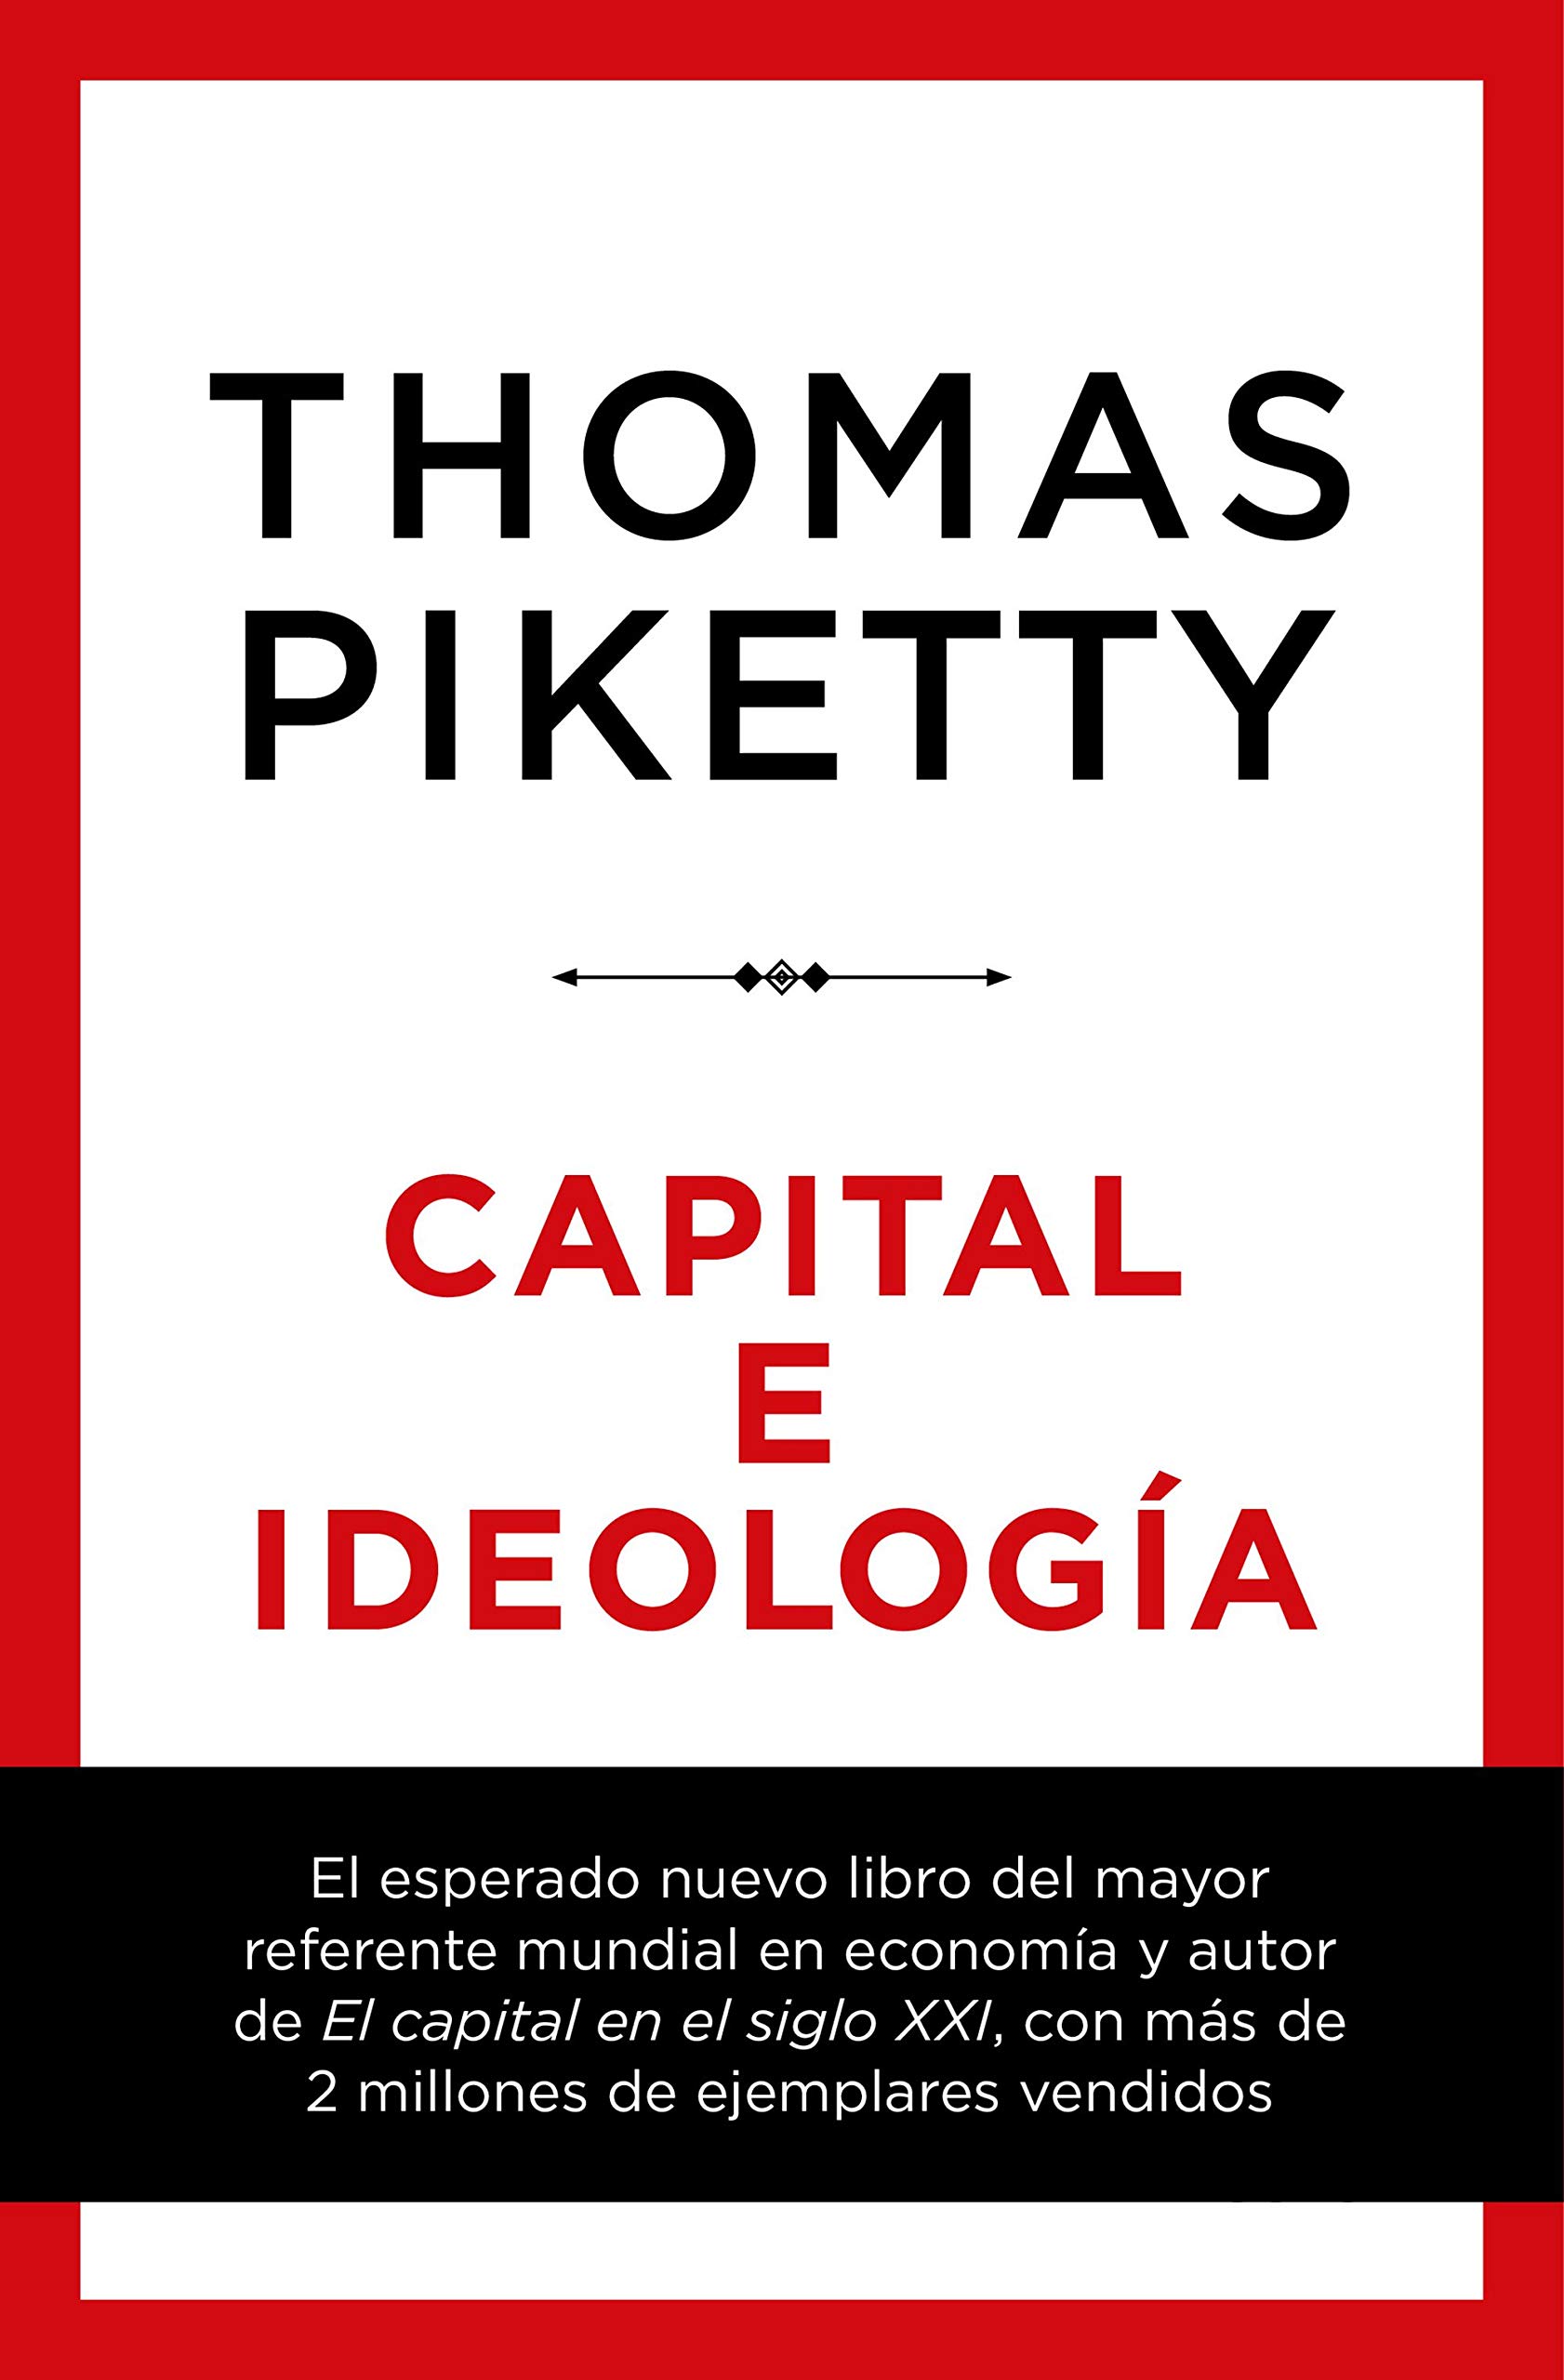 Portada del libro 'Capital e Ideología', de Thomas Piketty.